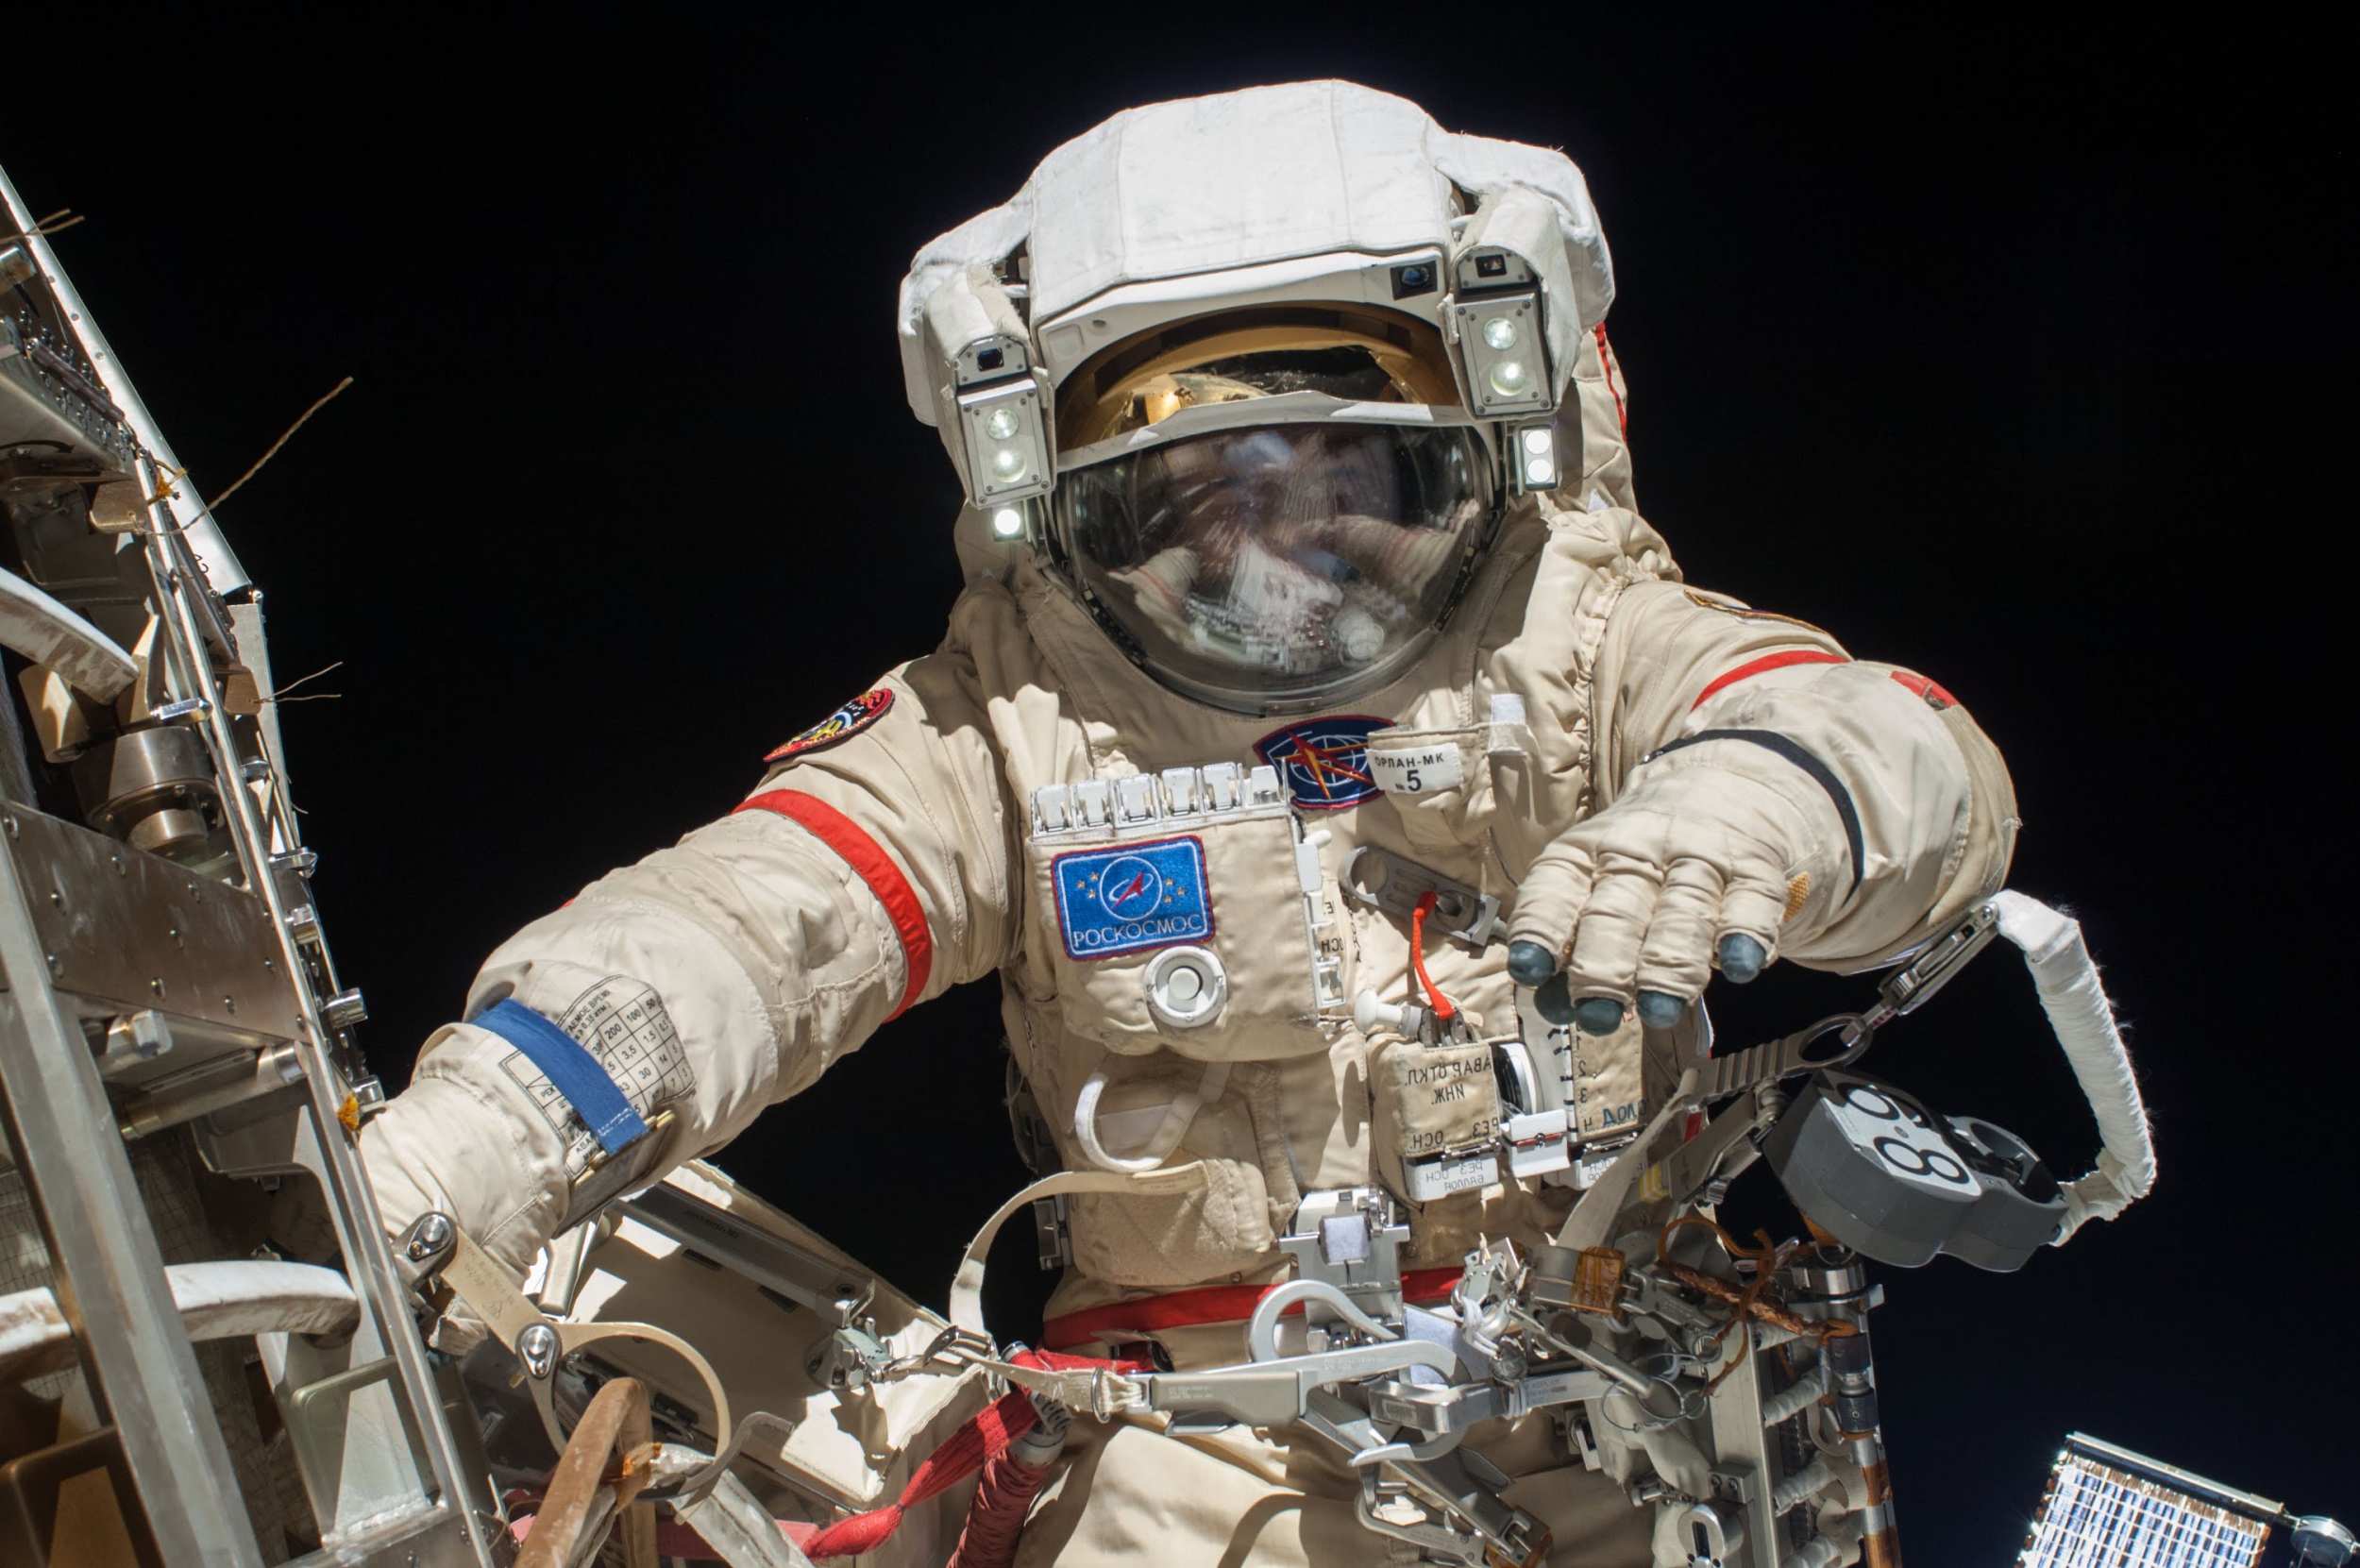 Δύο αστροναύτες μετά από 200 μέρες στο διάστημα επέστρεψαν με κάψουλα [Εικόνες+Βίντεο]